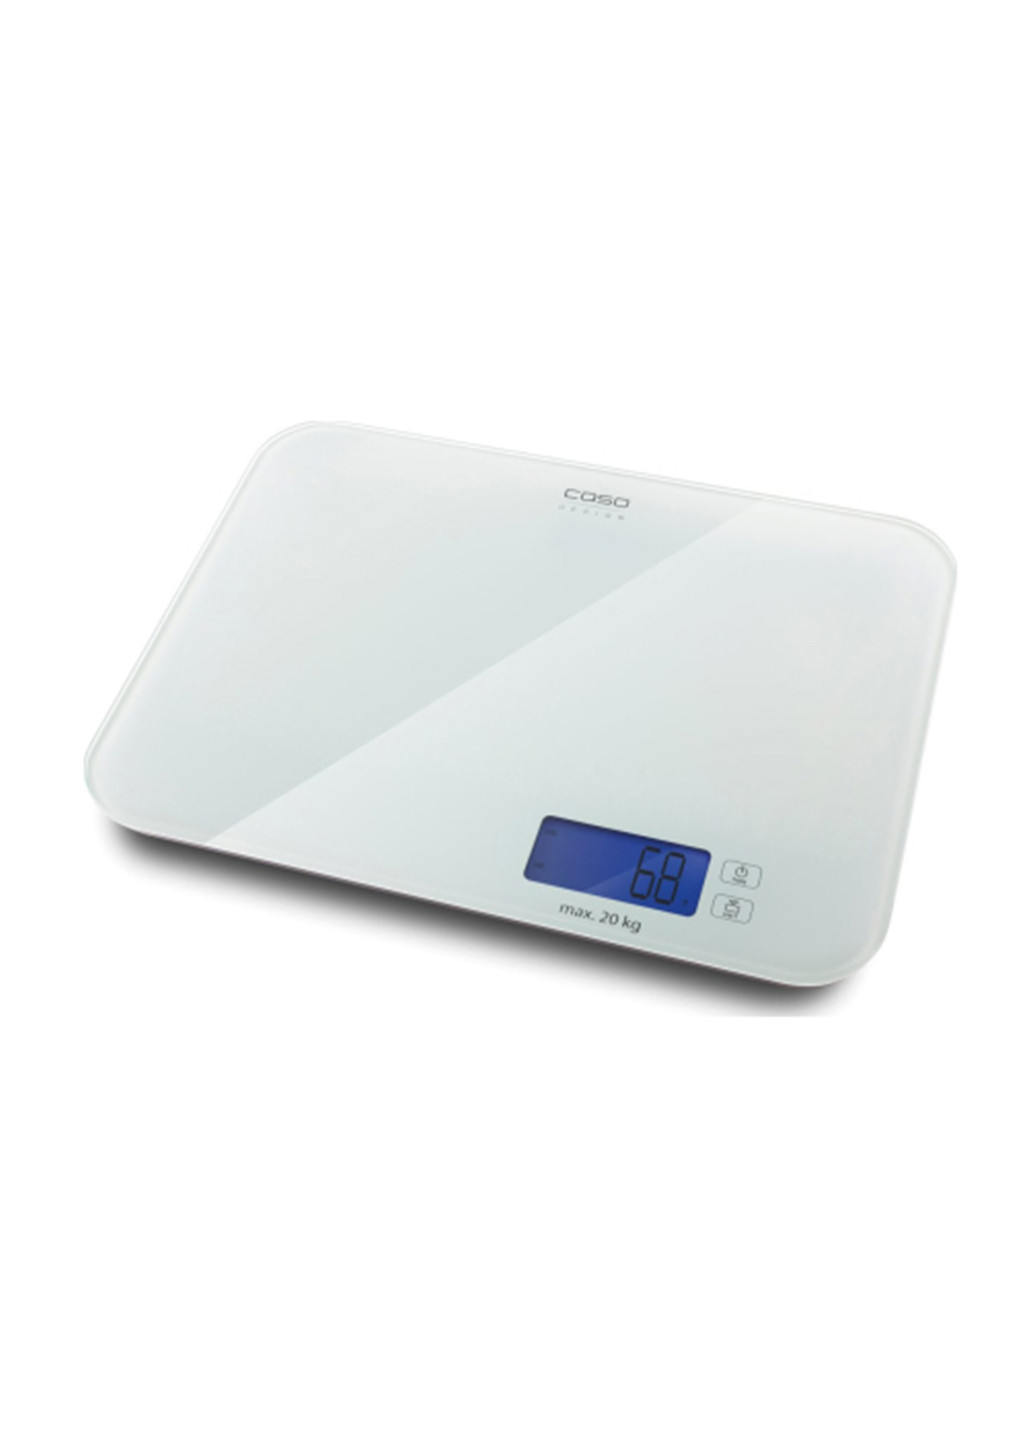 Кухонные весы Design scales CASO l20 (146305264)